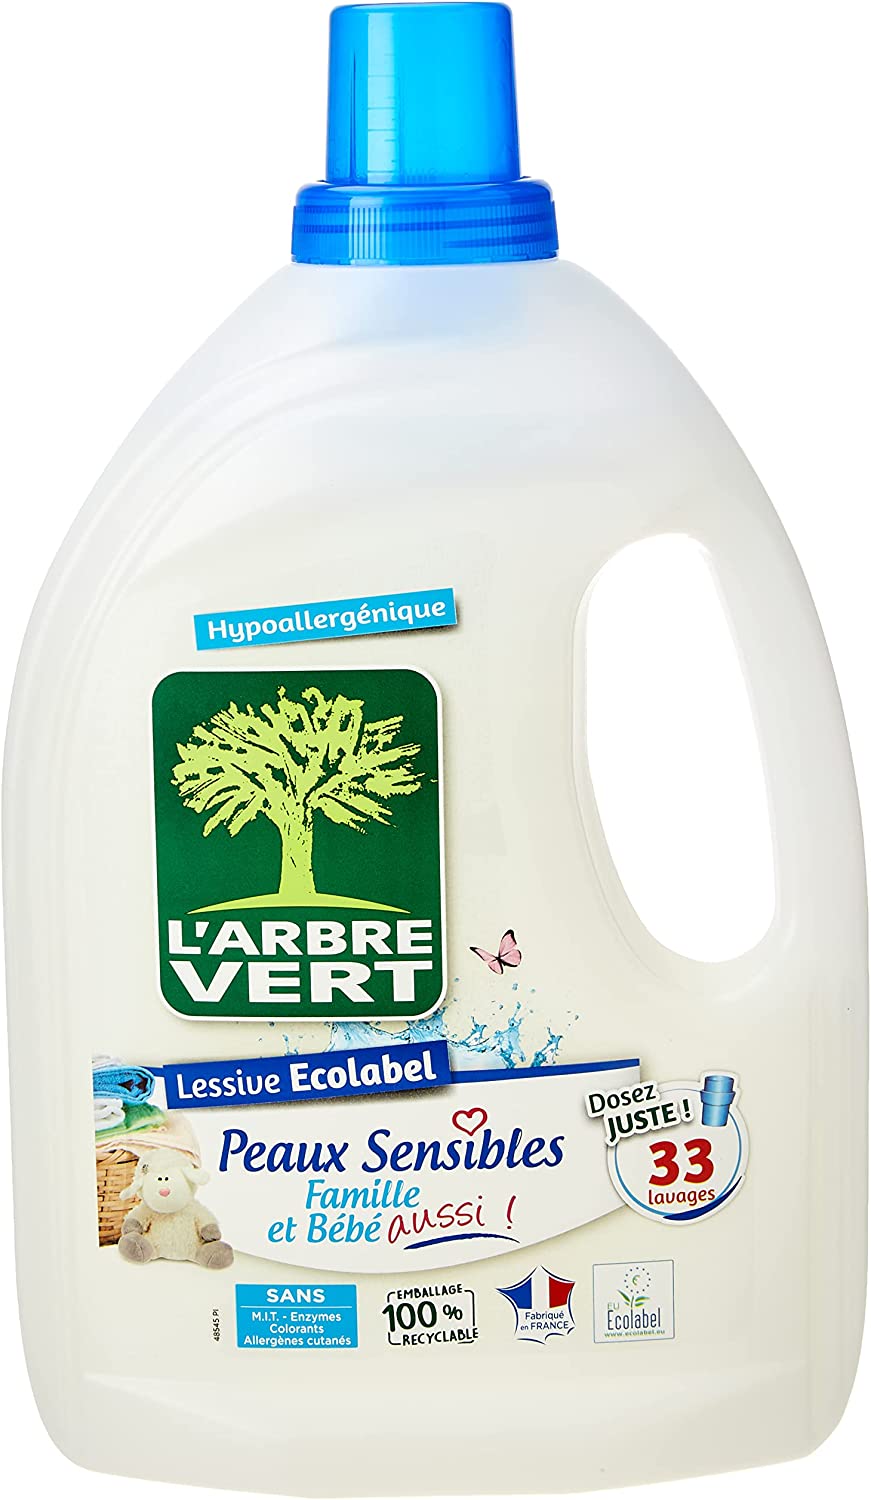 deal - L'Arbre Vert Lessive Liquide pour Peaux Sensibles Famille et Bébé  Hypoallergénique Sans Allergènes, 1,5L, 5,95€ au lieu de 8,30€ sur